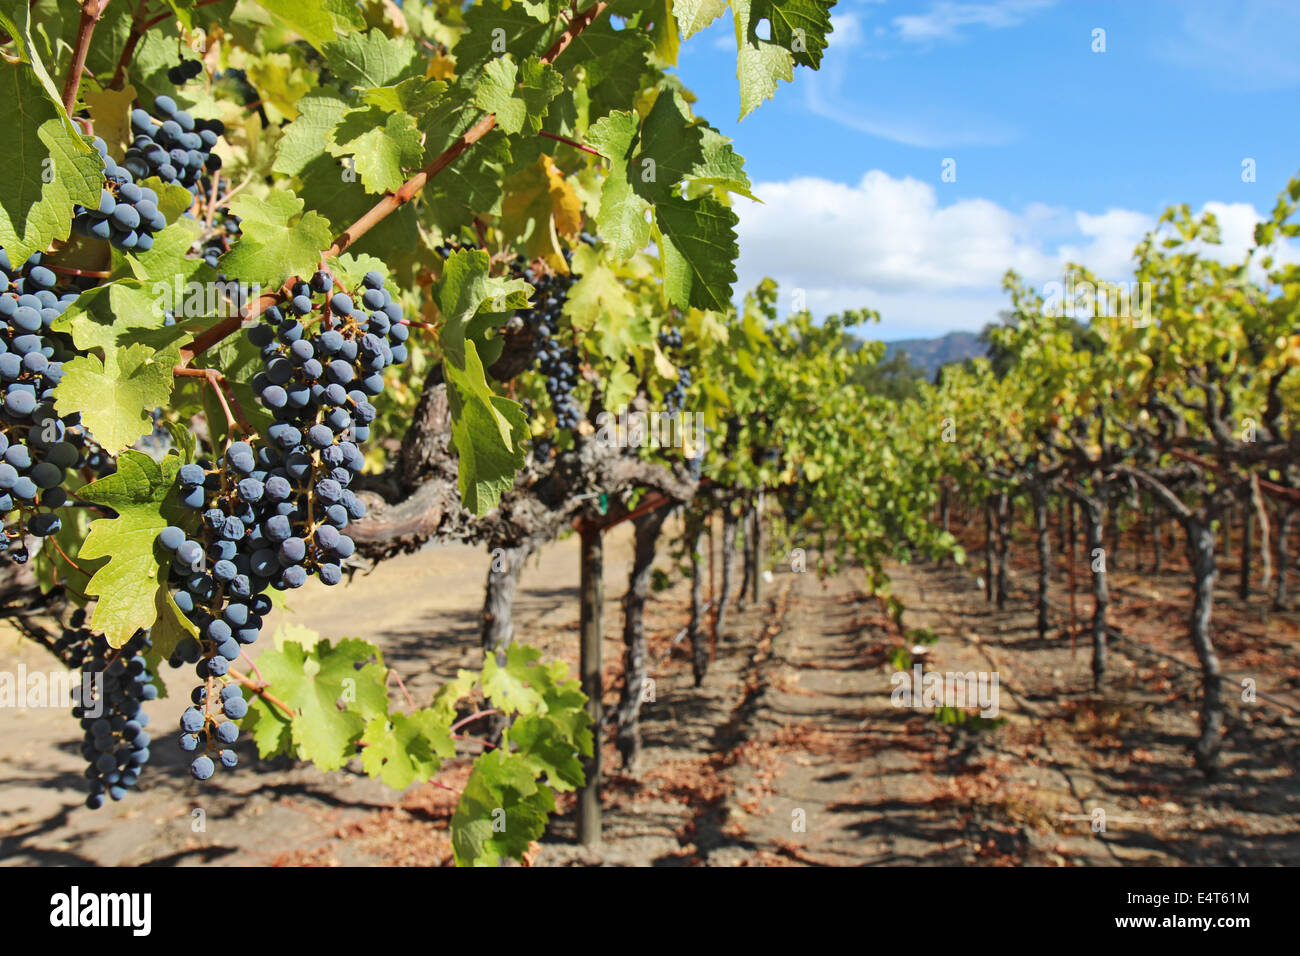 Una profundidad de campo limitada destaca el vino de uvas maduras, púrpura colgando de la vid en un viñedo en el valle de Napa, cerca de Calistoga Foto de stock